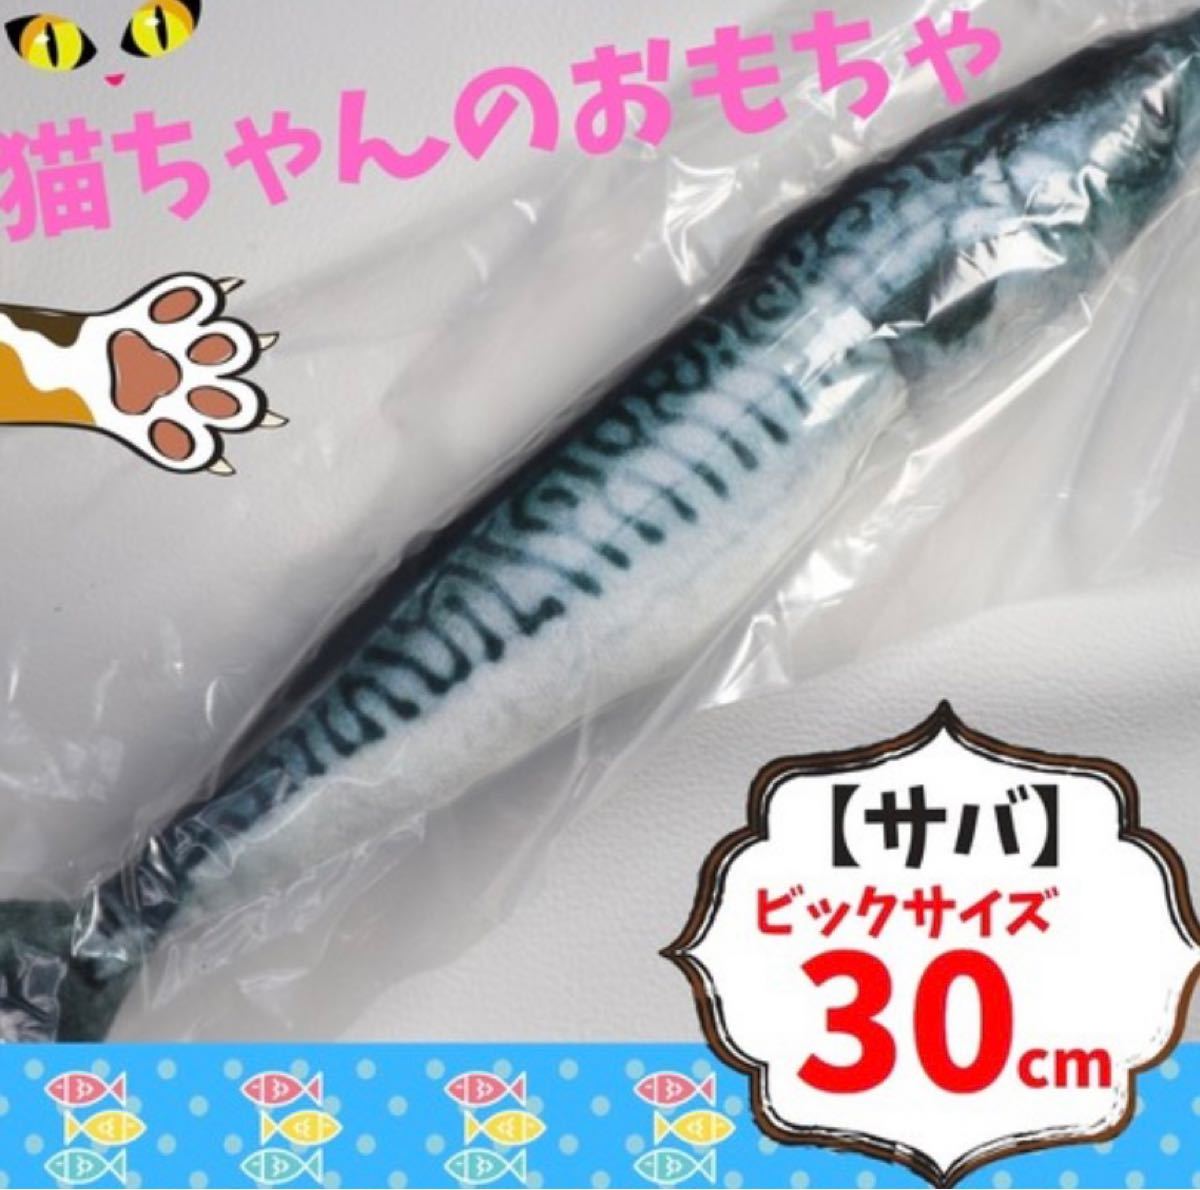 【サバ/30cm】 猫 魚 ビッグサイズ 30cm サバ おもちゃ ぬいぐるみ 猫じゃらし オモチャ ストレス解消 ペット用品